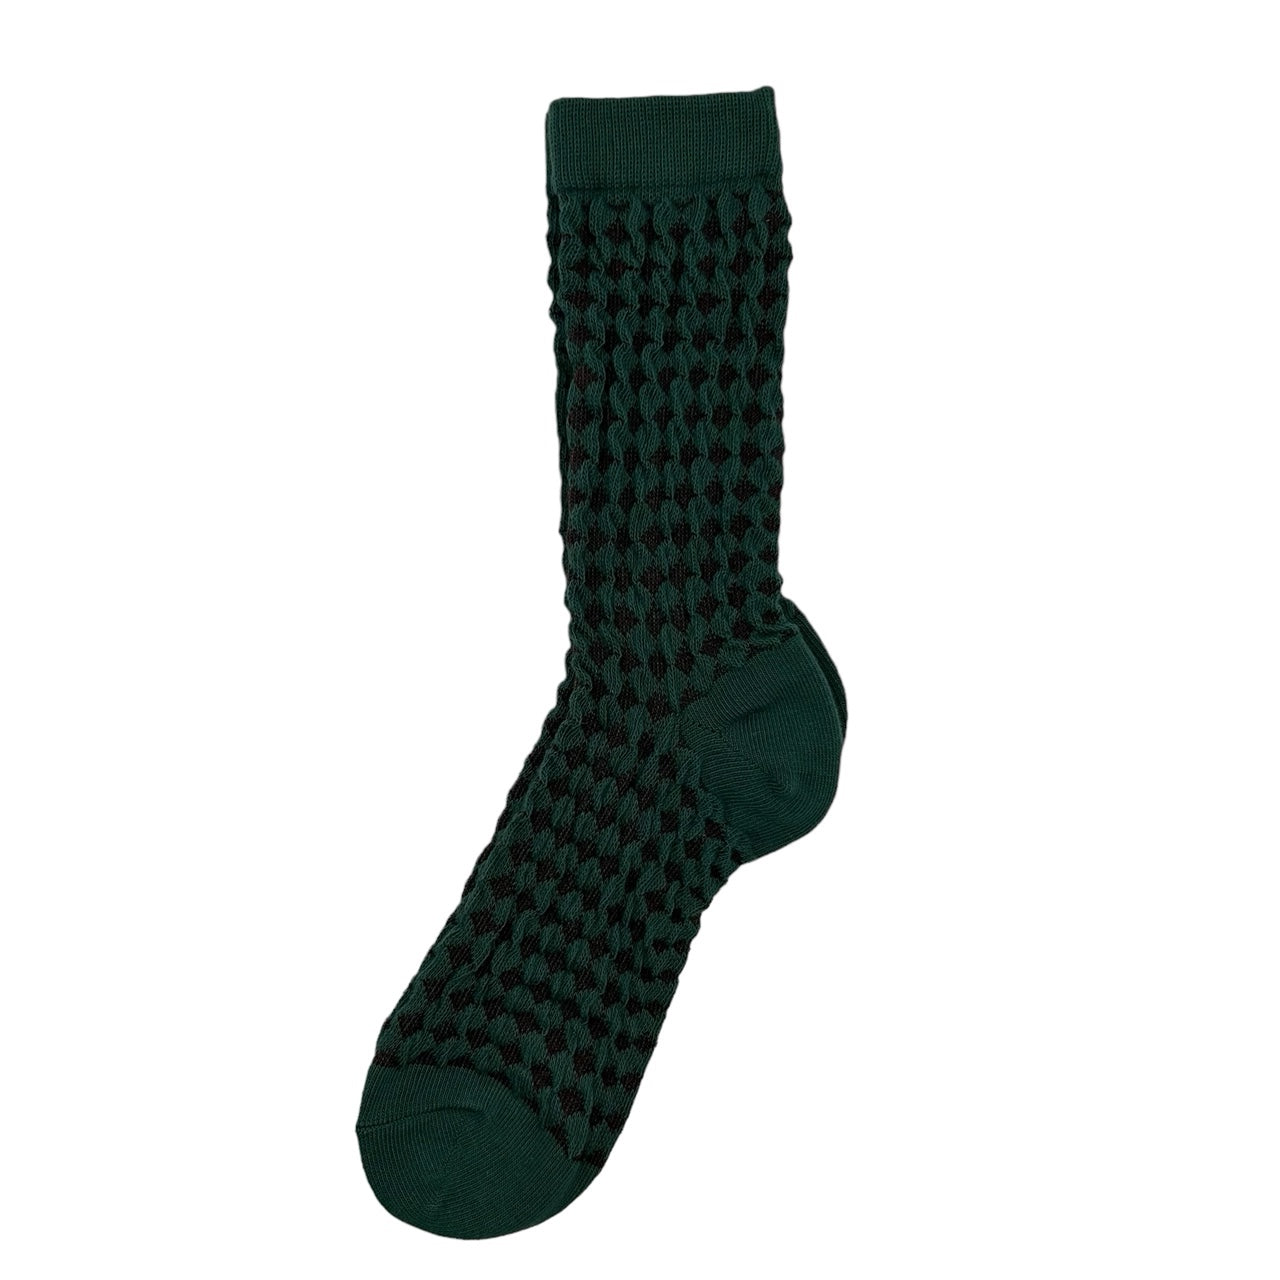 Estoril socks